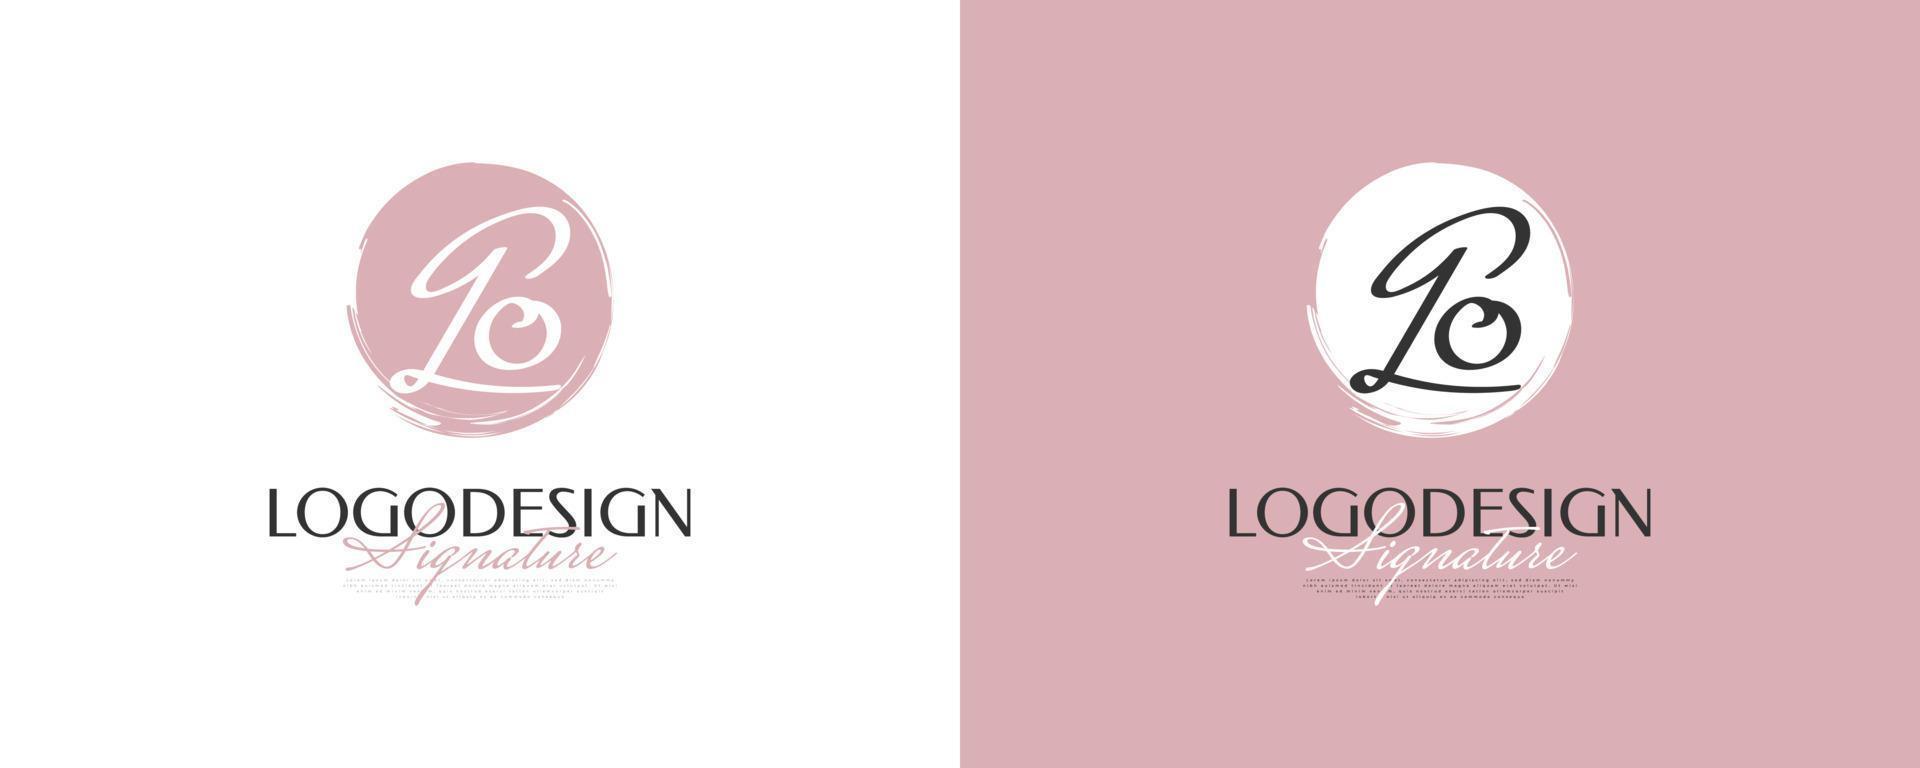 design de logotipo inicial g e o em estilo de caligrafia elegante e minimalista. go logotipo ou símbolo de assinatura para casamento, moda, joias, boutique e identidade comercial vetor